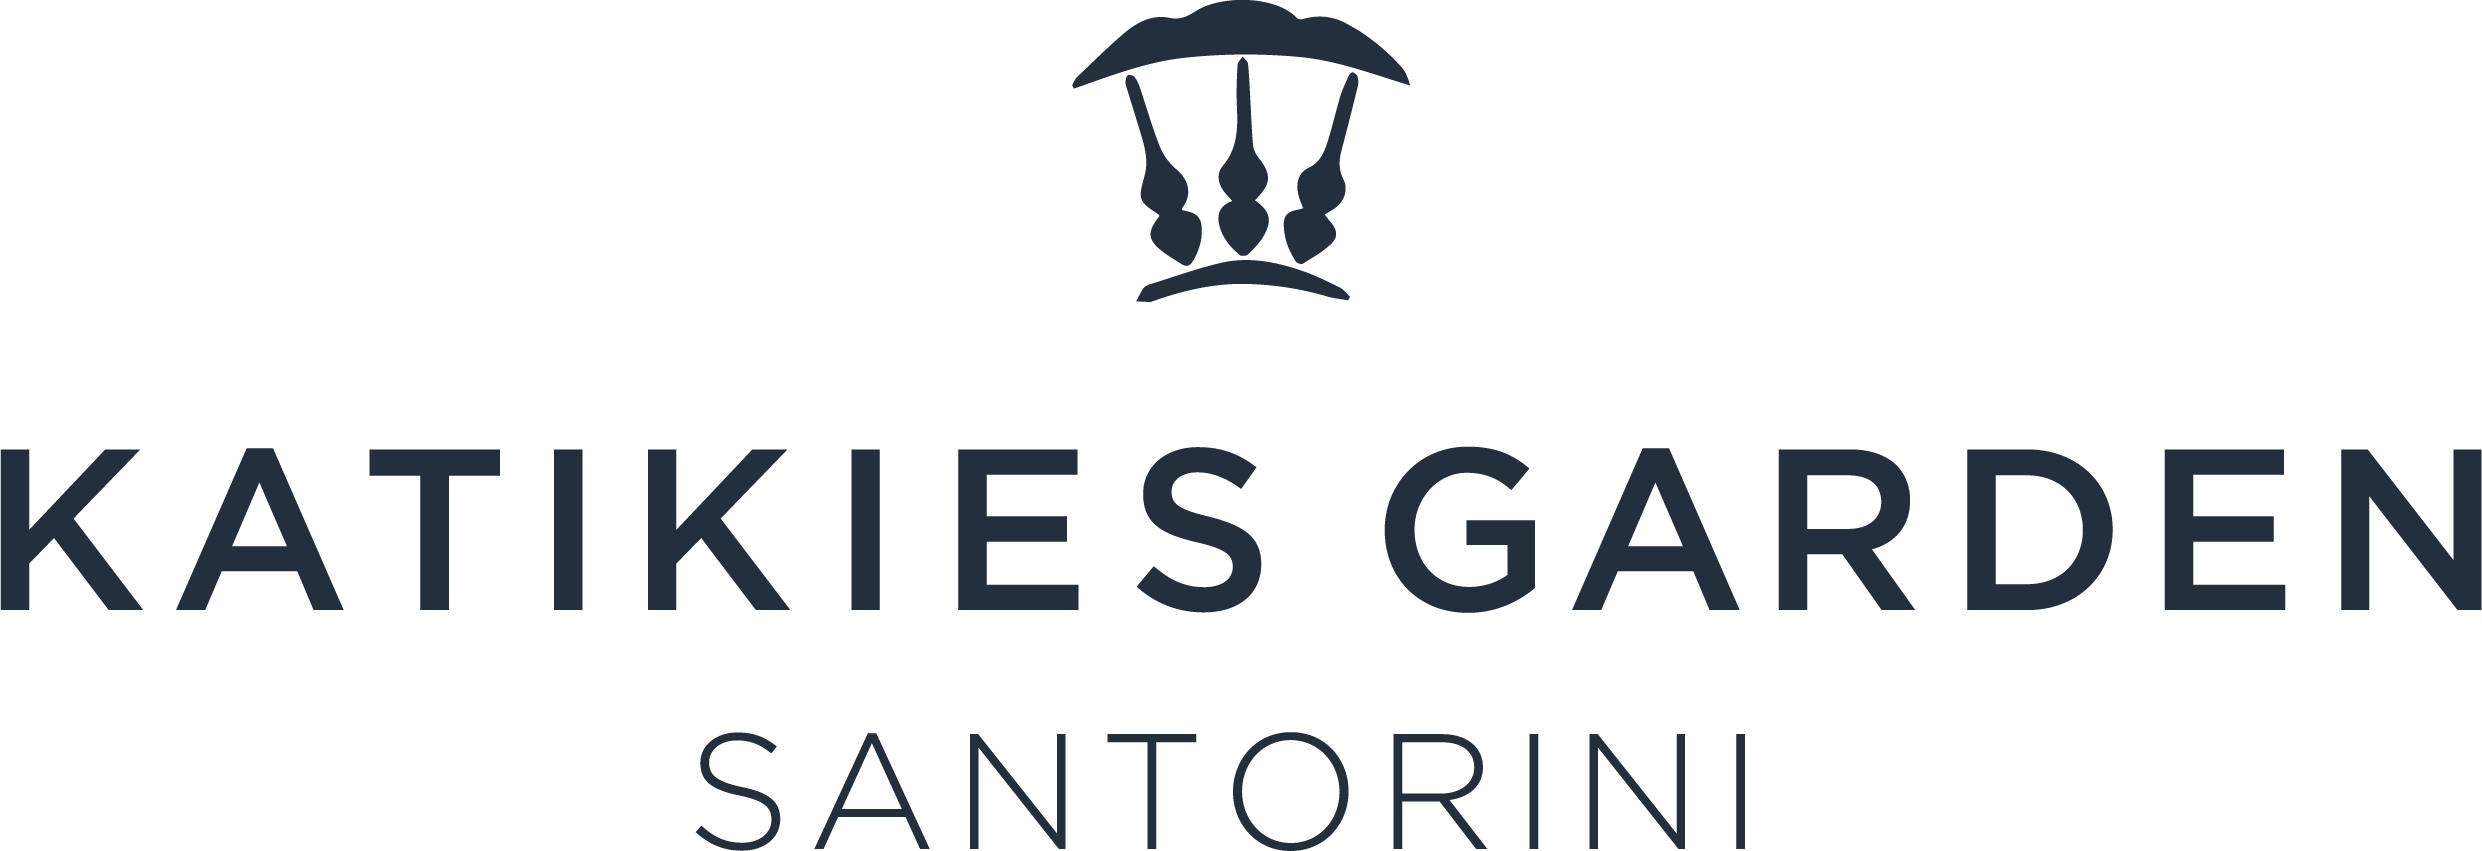 Katikies Garden logo